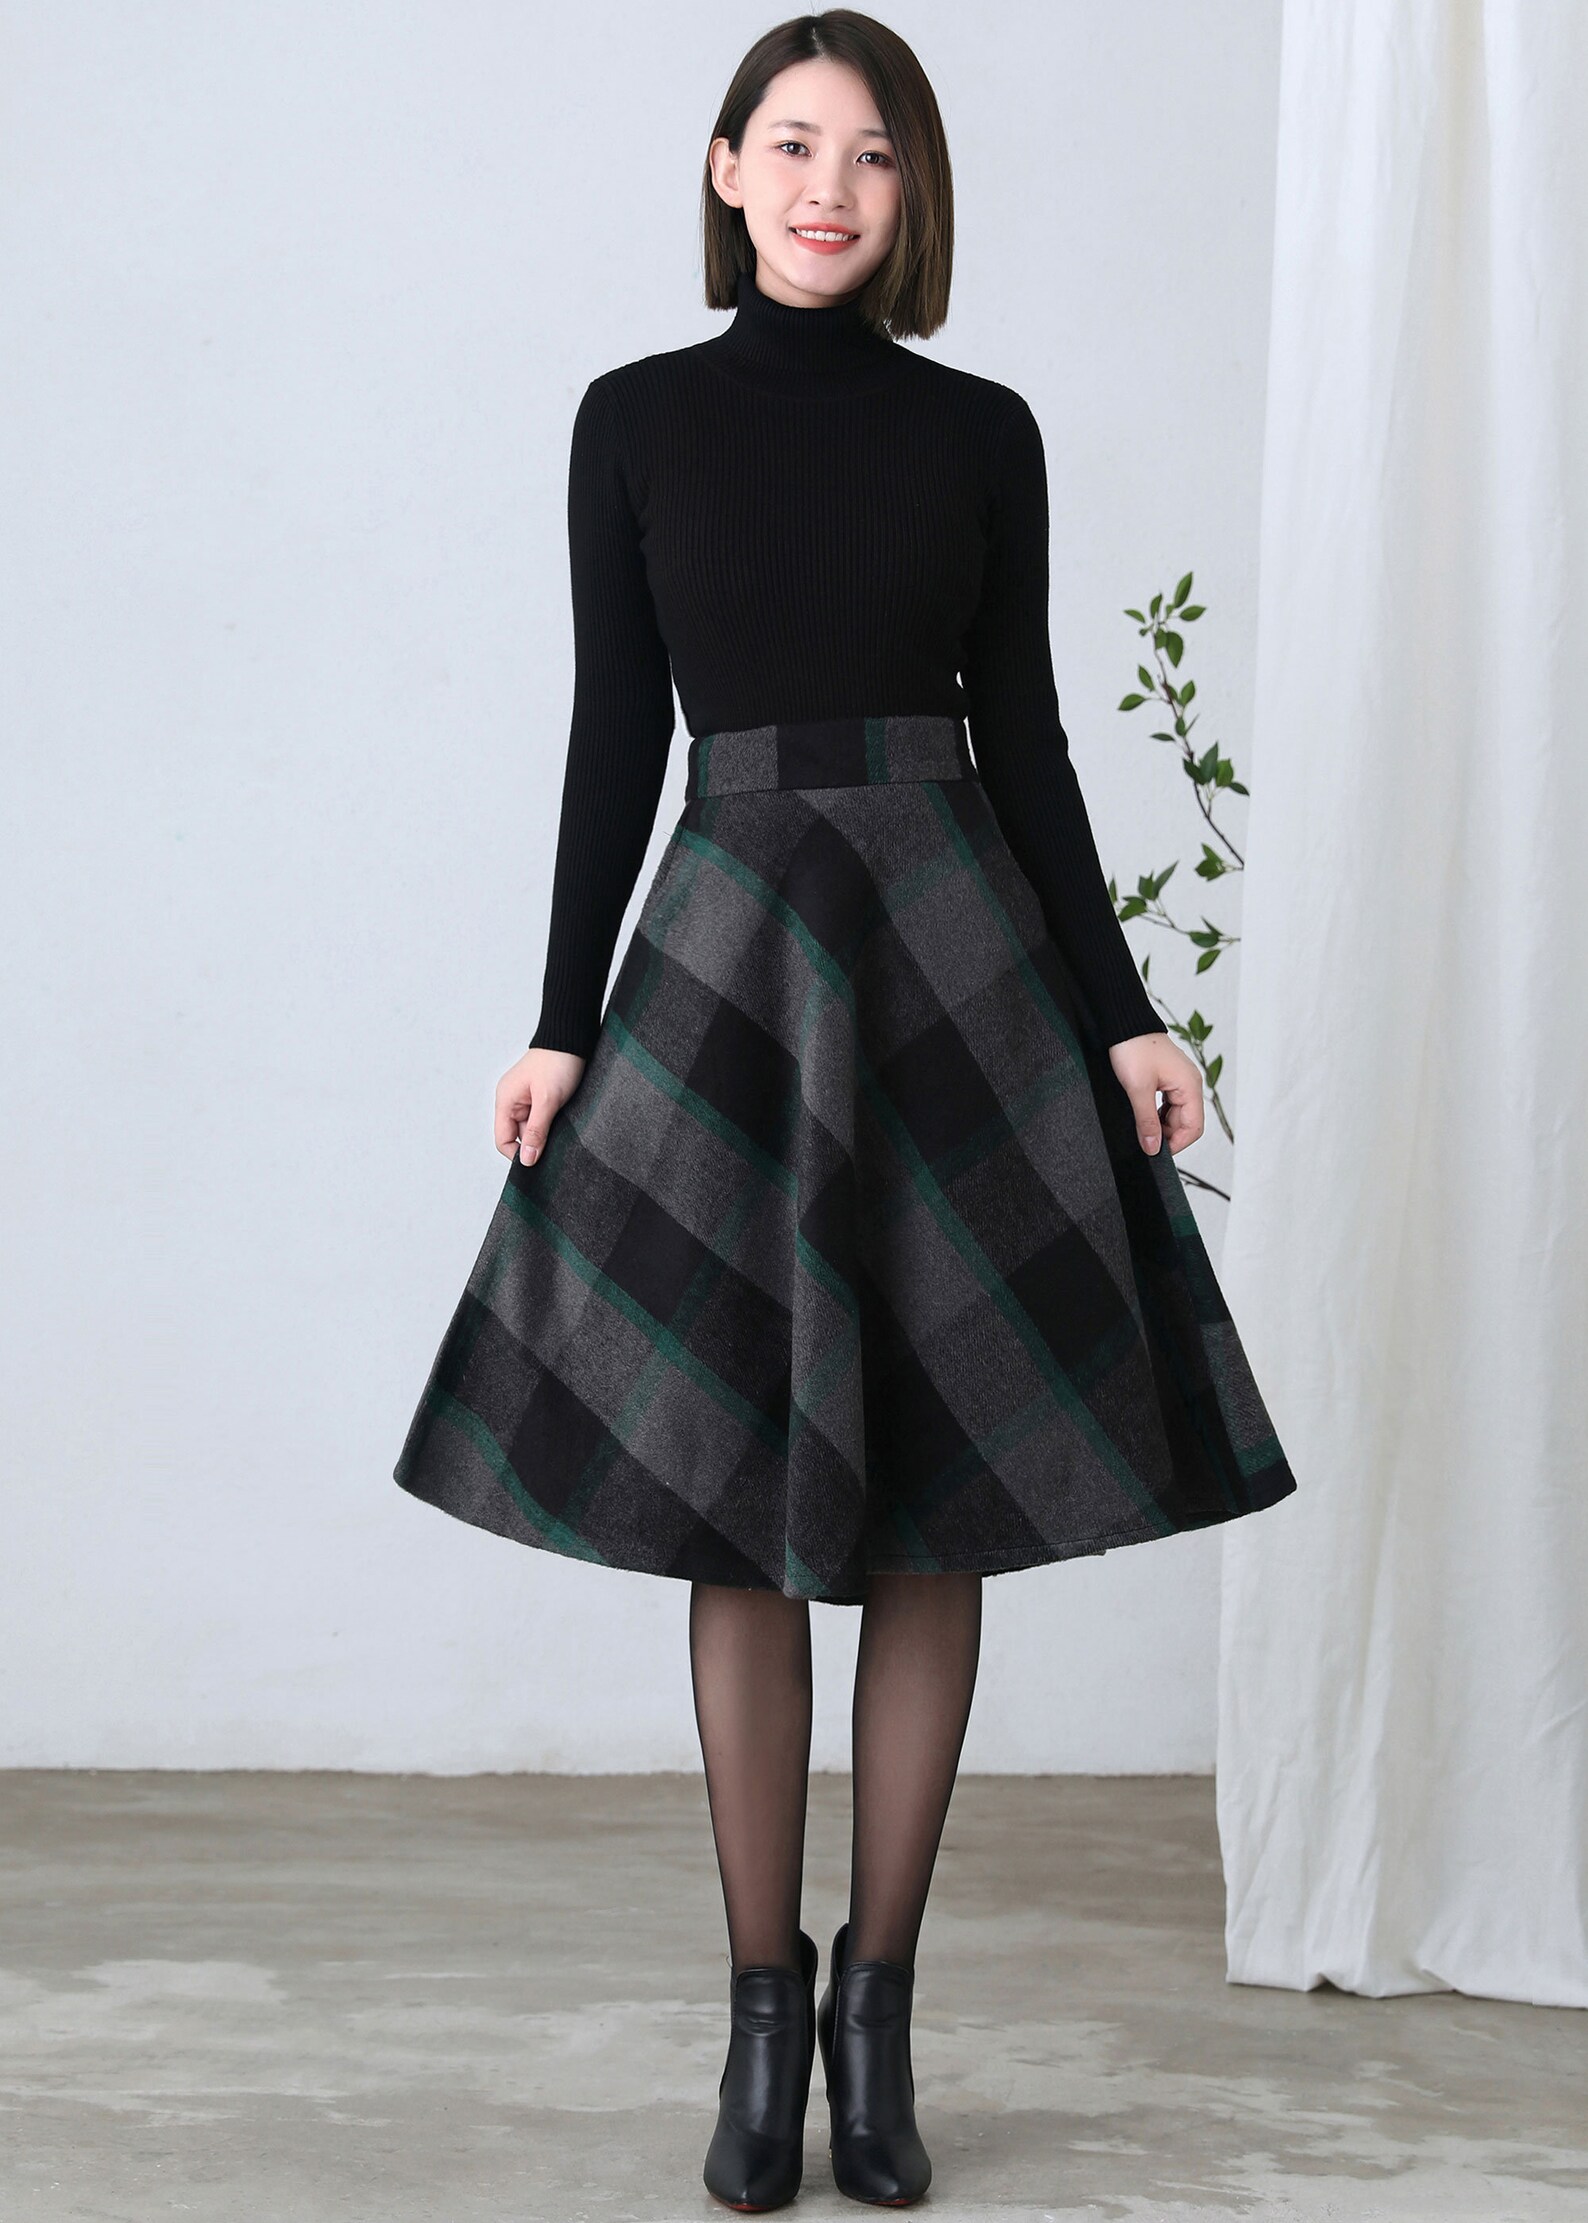 Wool Skirt Midi Plaid Skirt Tartan Skirt Women Retro High | Etsy